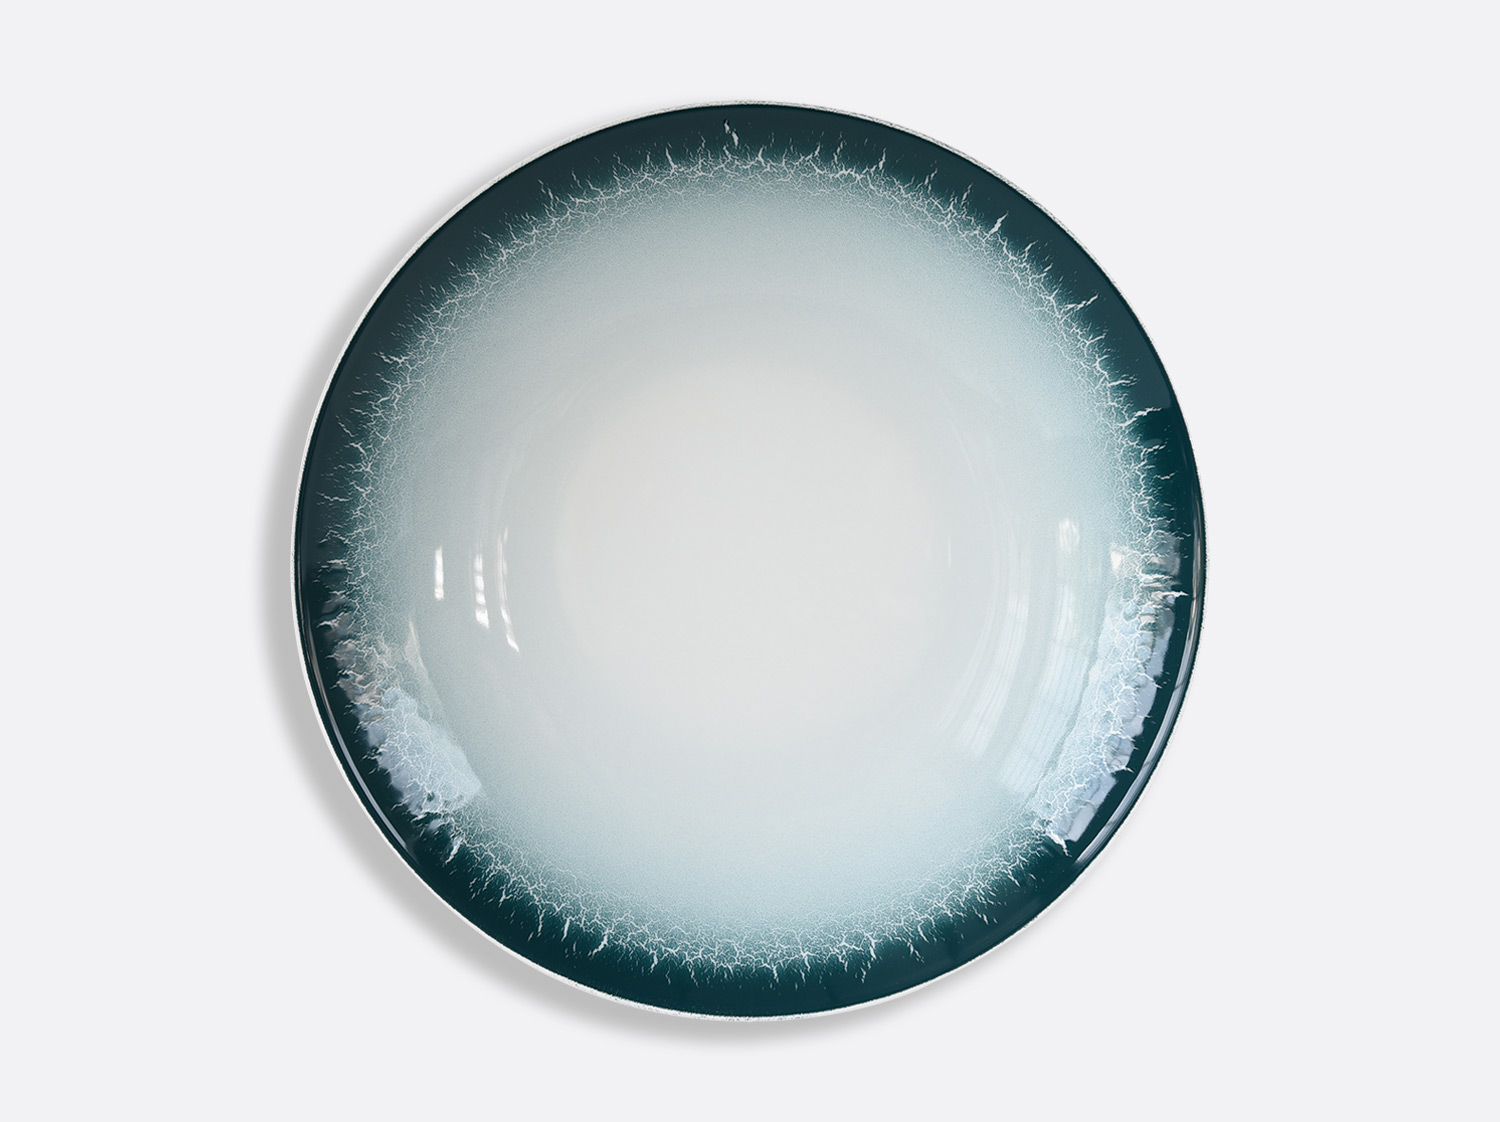 China Deep round dish 11.6" of the collection TERRA CALANQUE | Bernardaud